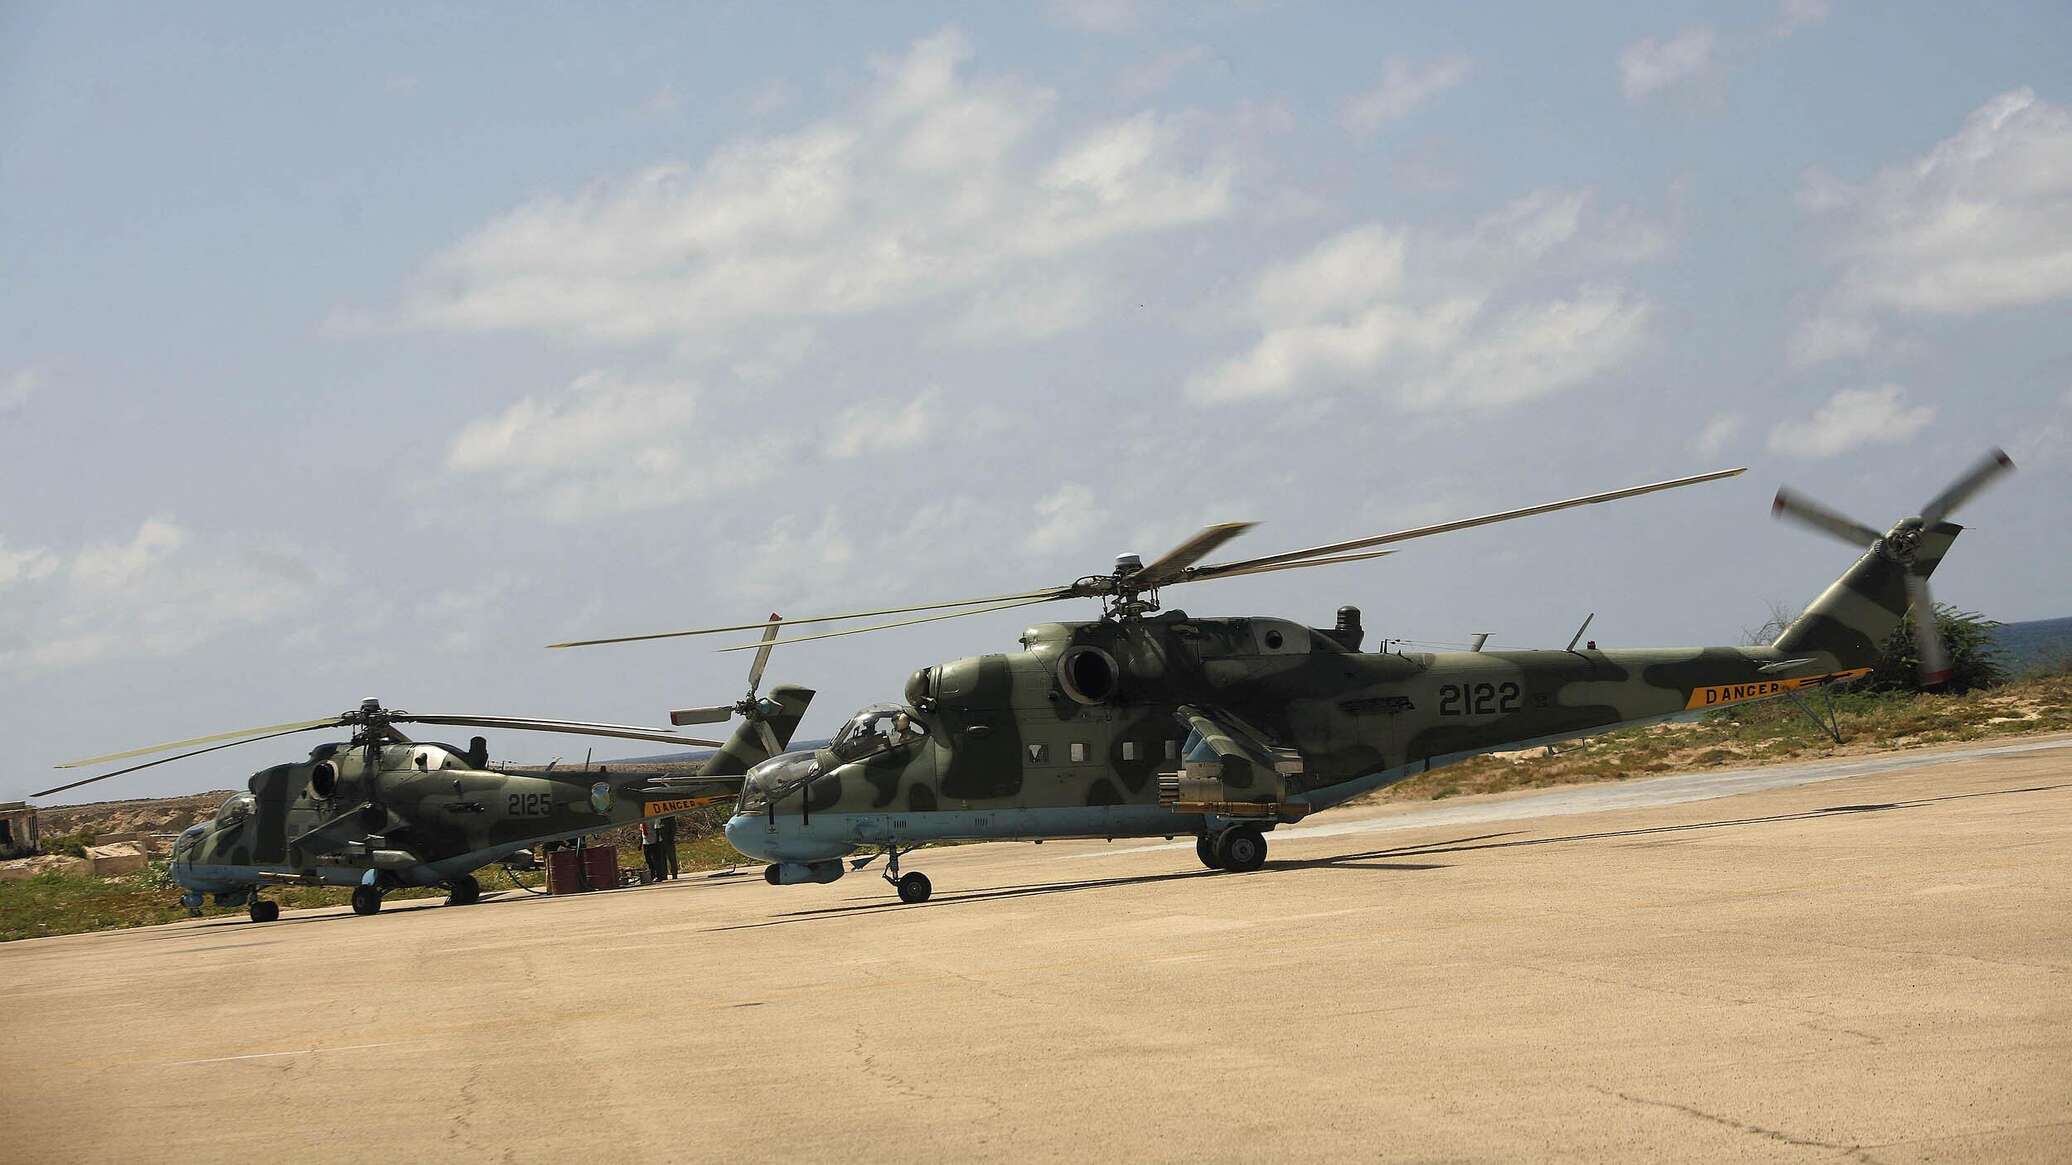 إثيوبيا وقطر تتفقان على تعزيز شراكتهما في مجال الدفاع... فما قدراتهما العسكرية؟